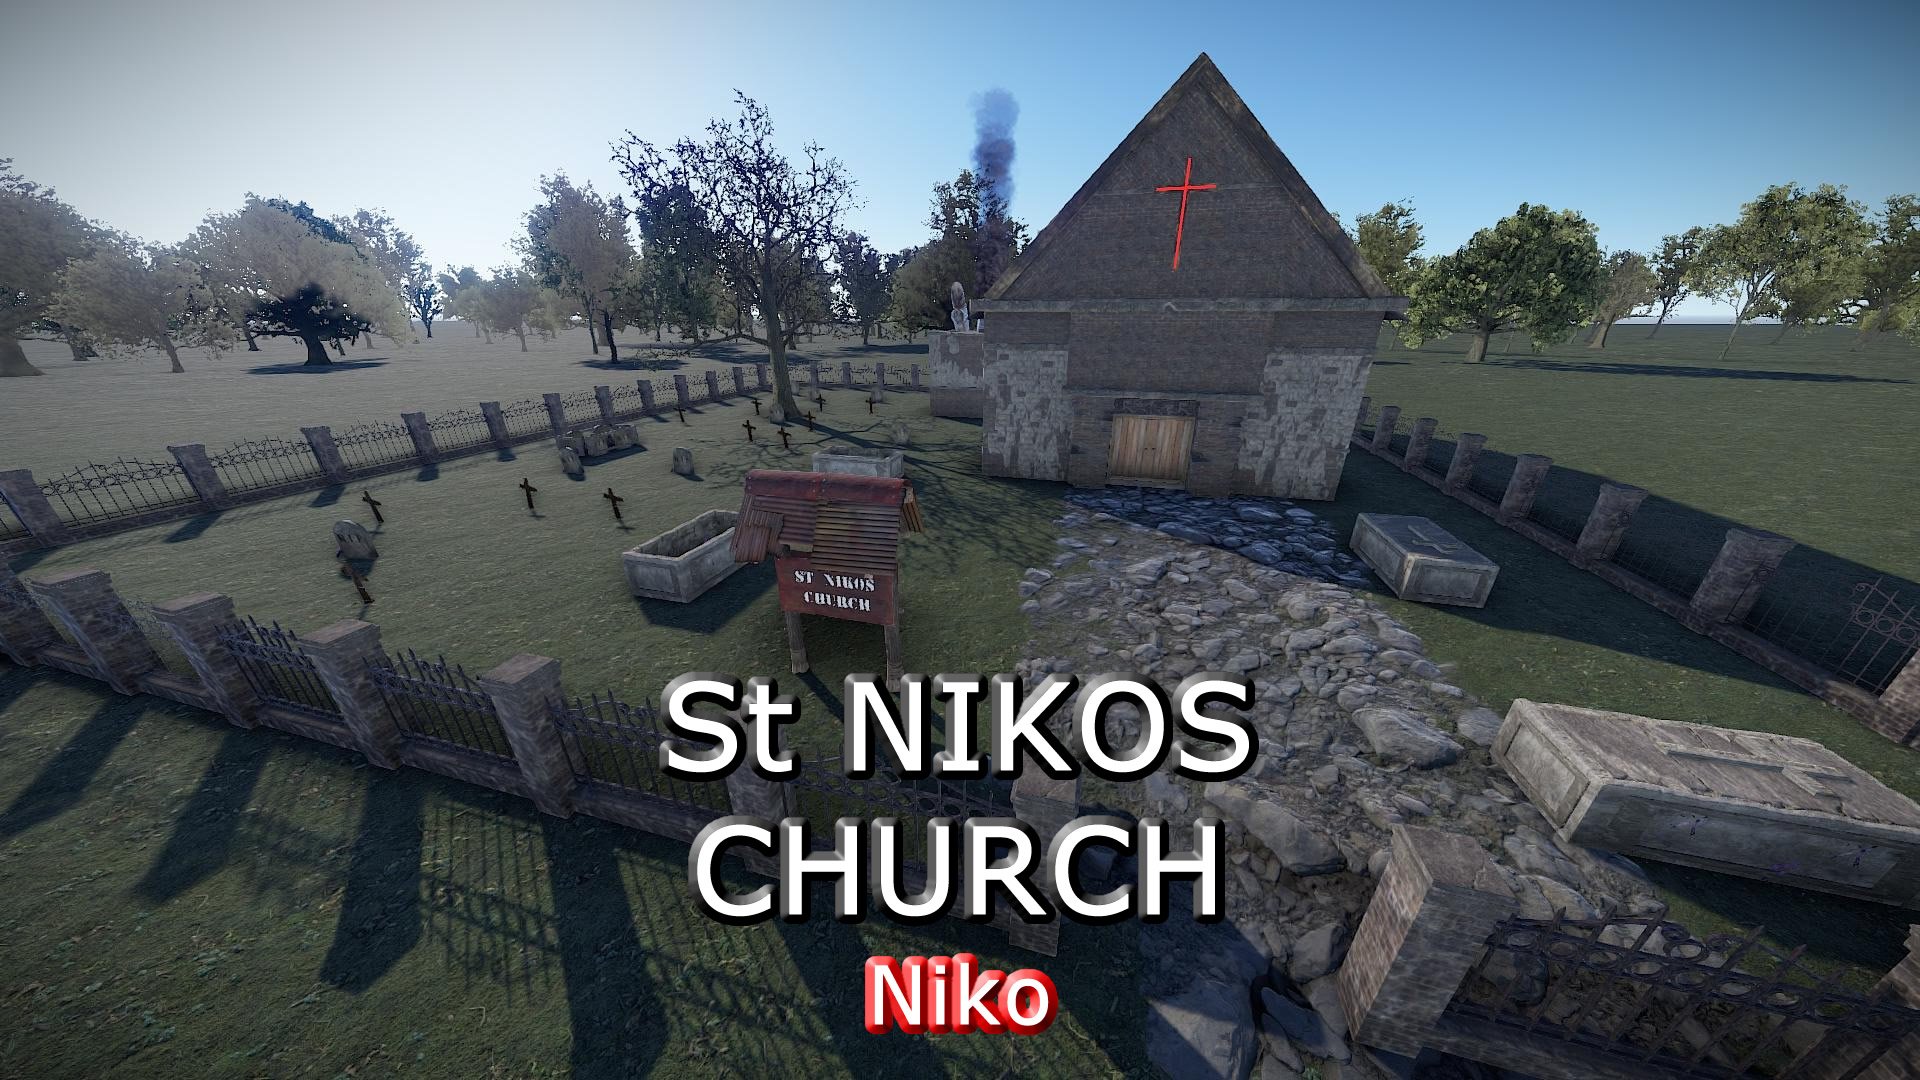 St Nikos Church